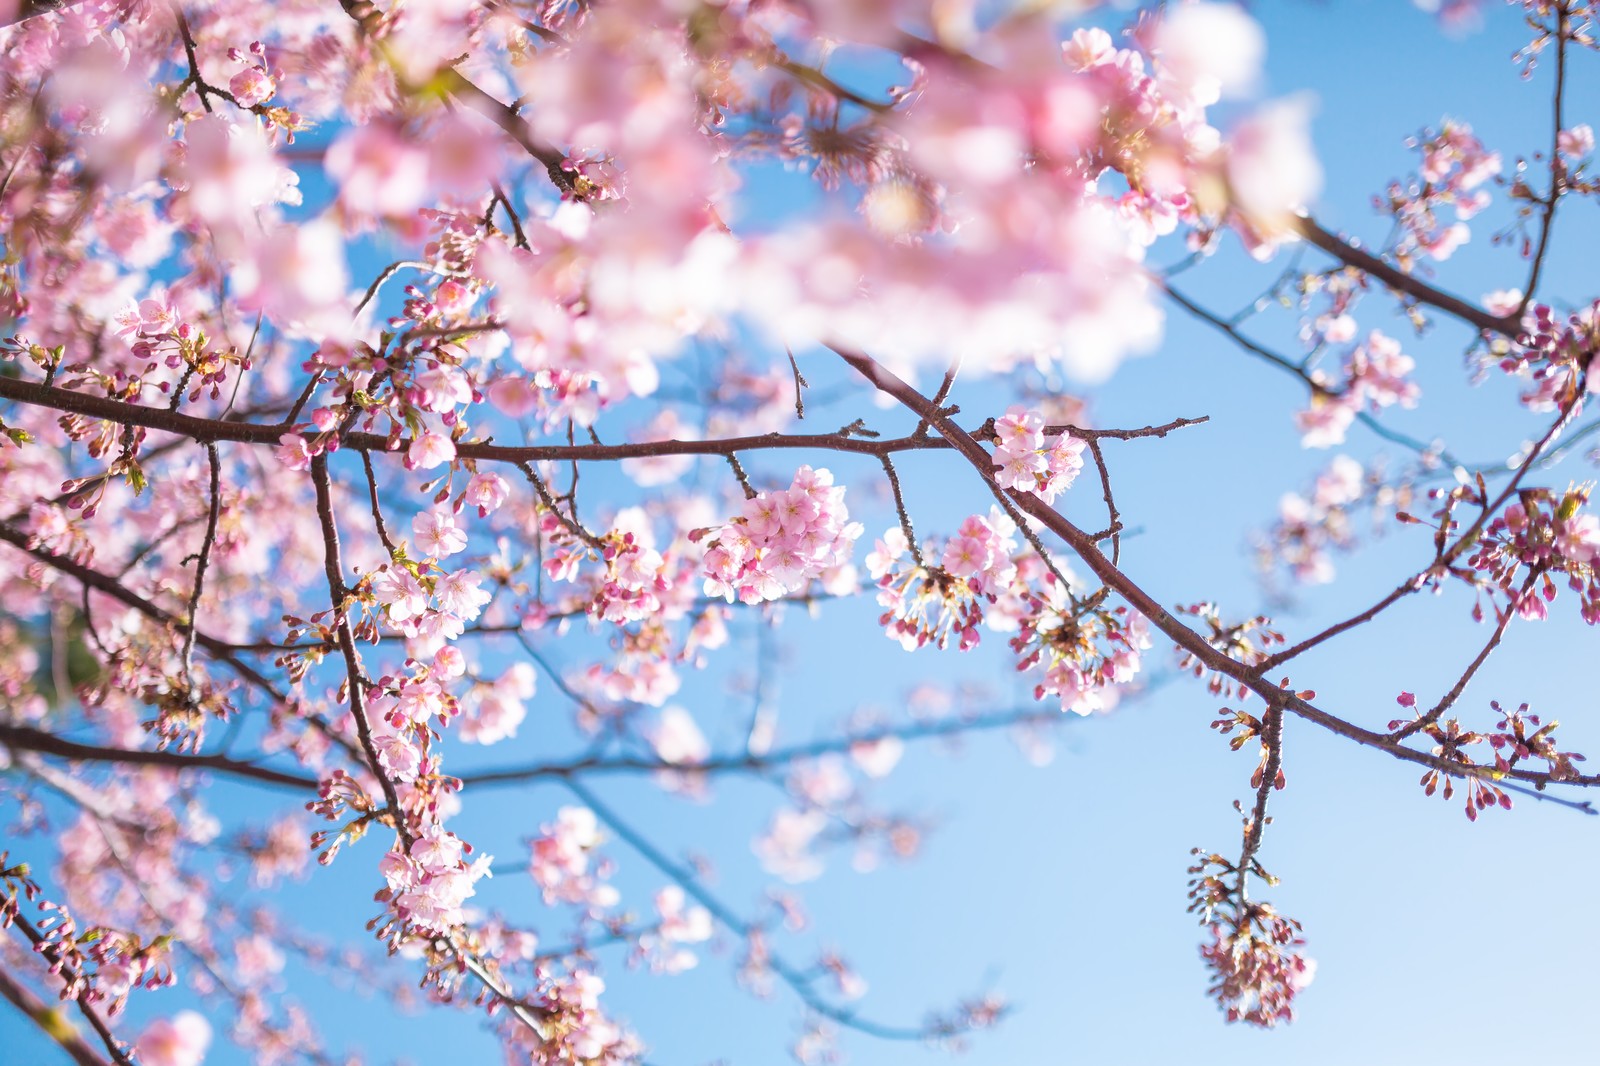 Cherry blossom spots in Kanazawa